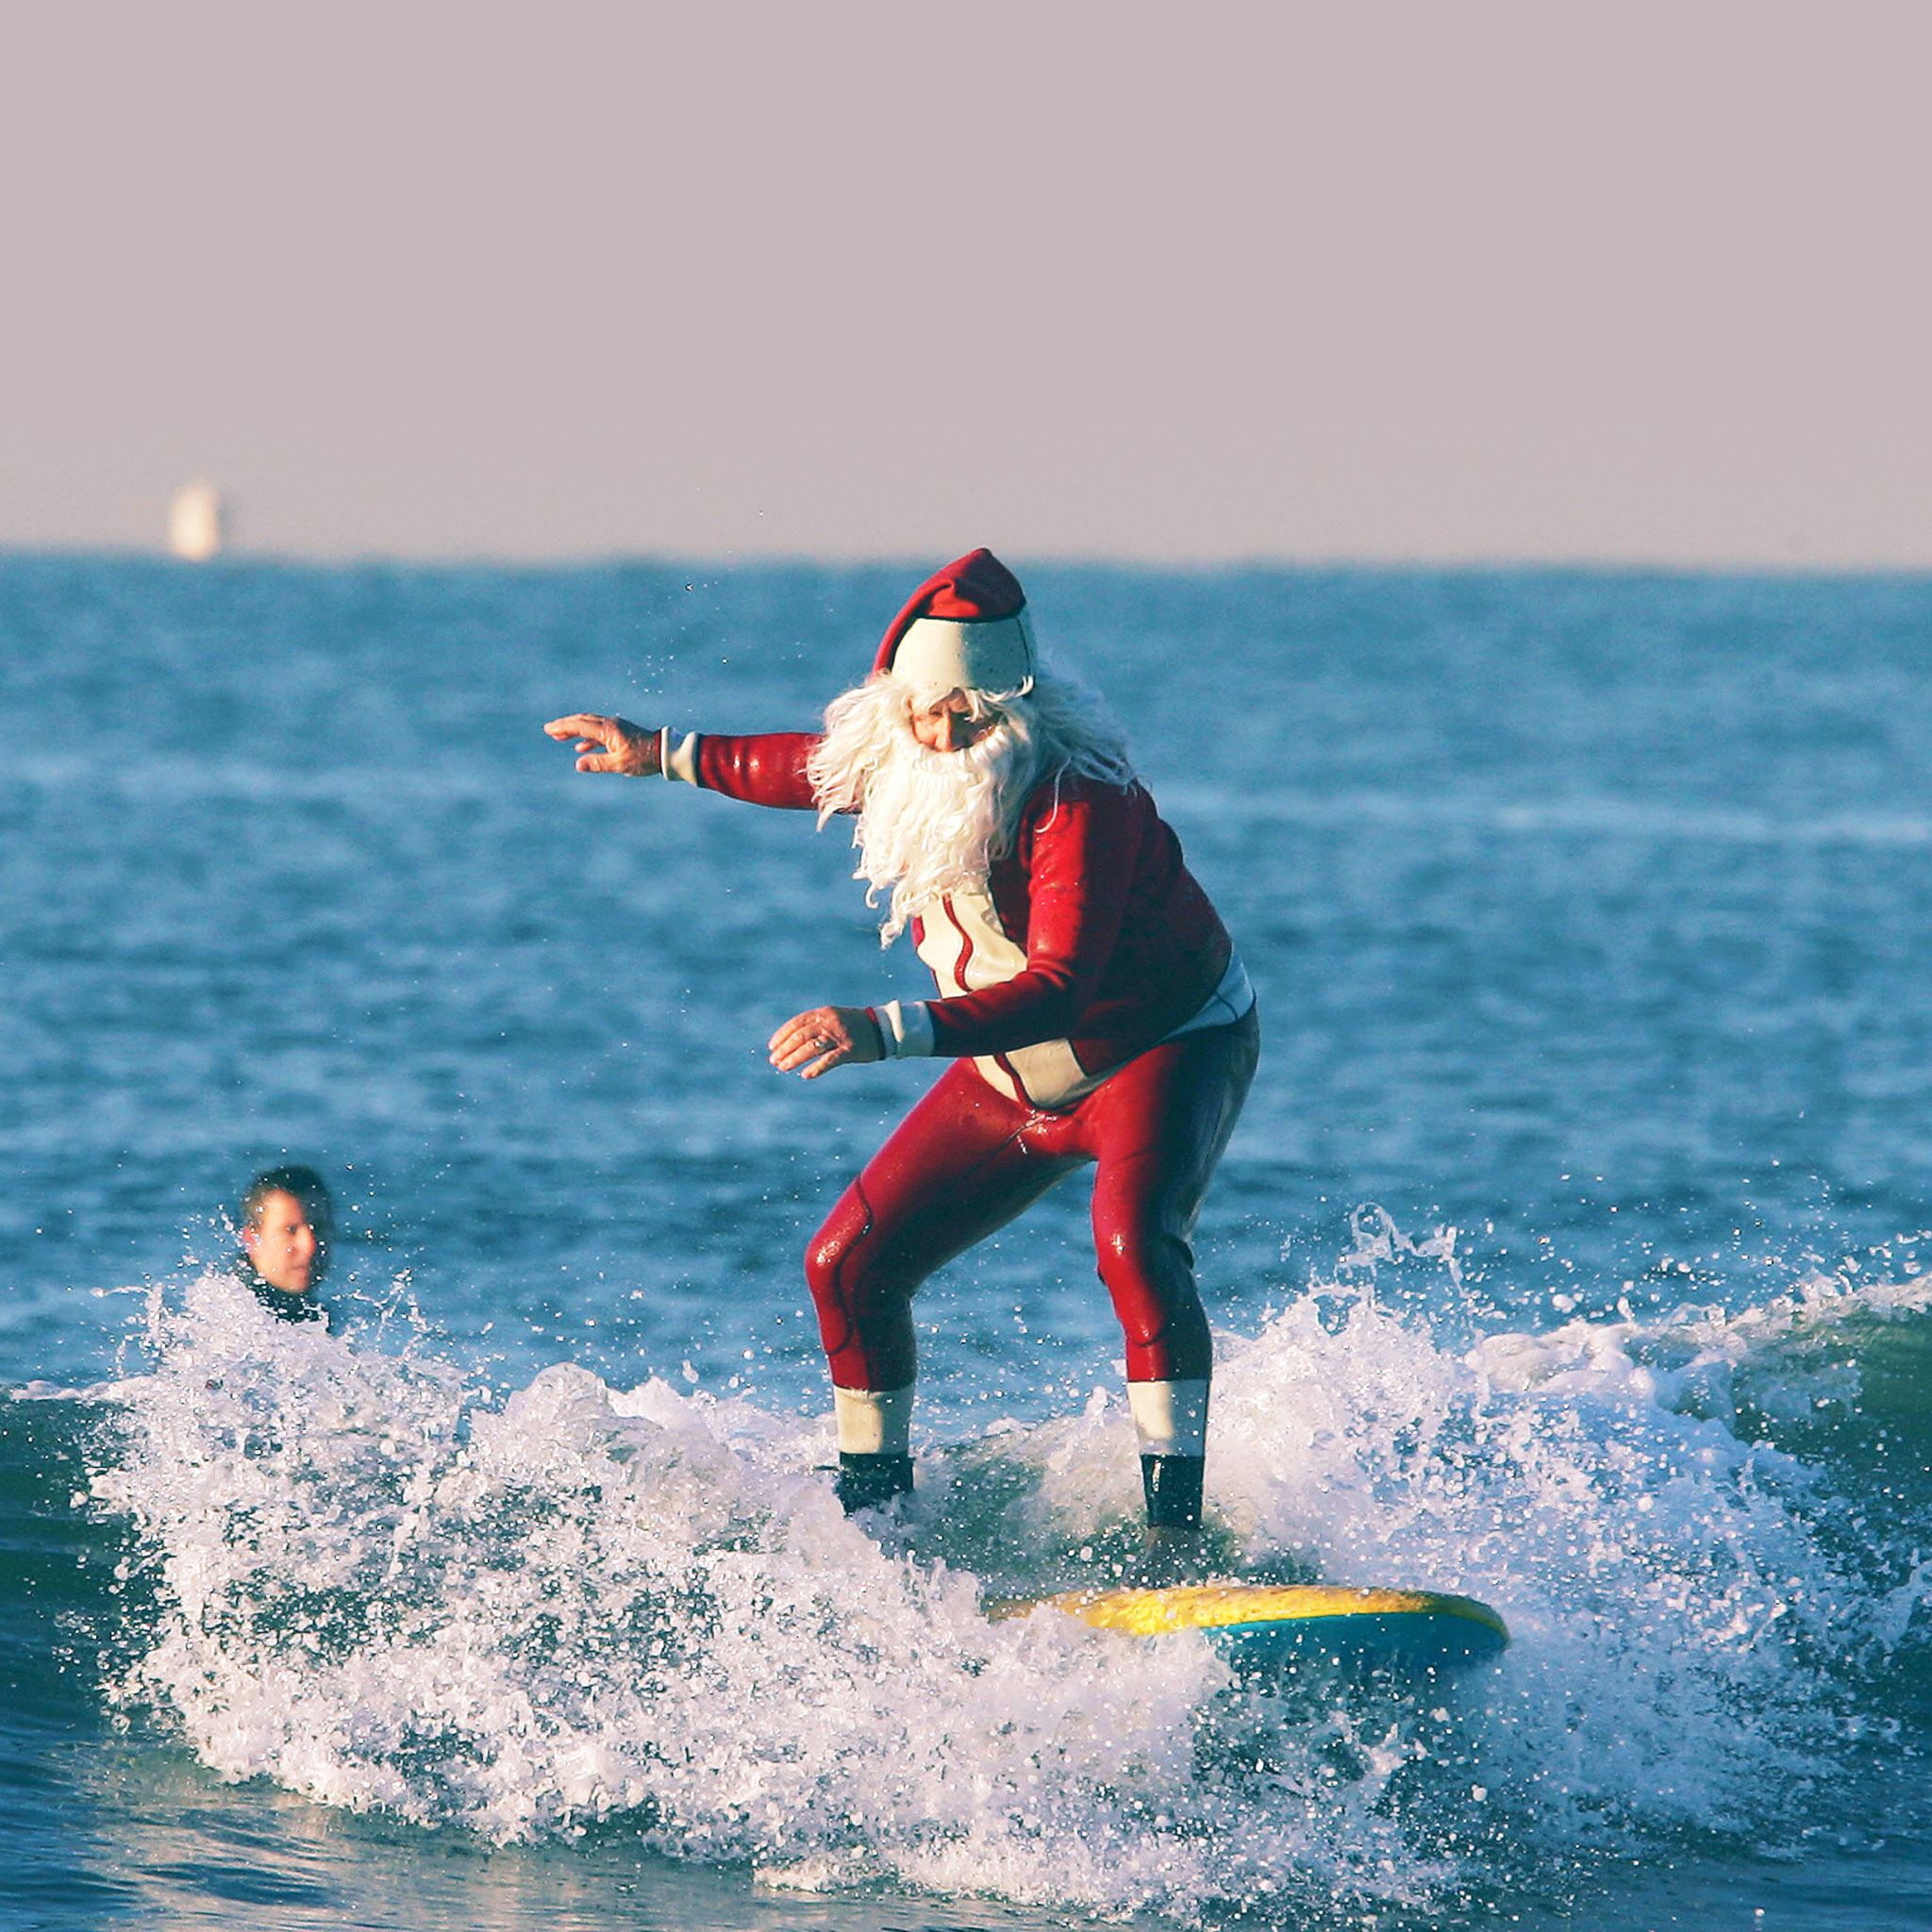 Surfing Santa Claus iPad Air wallpaper 